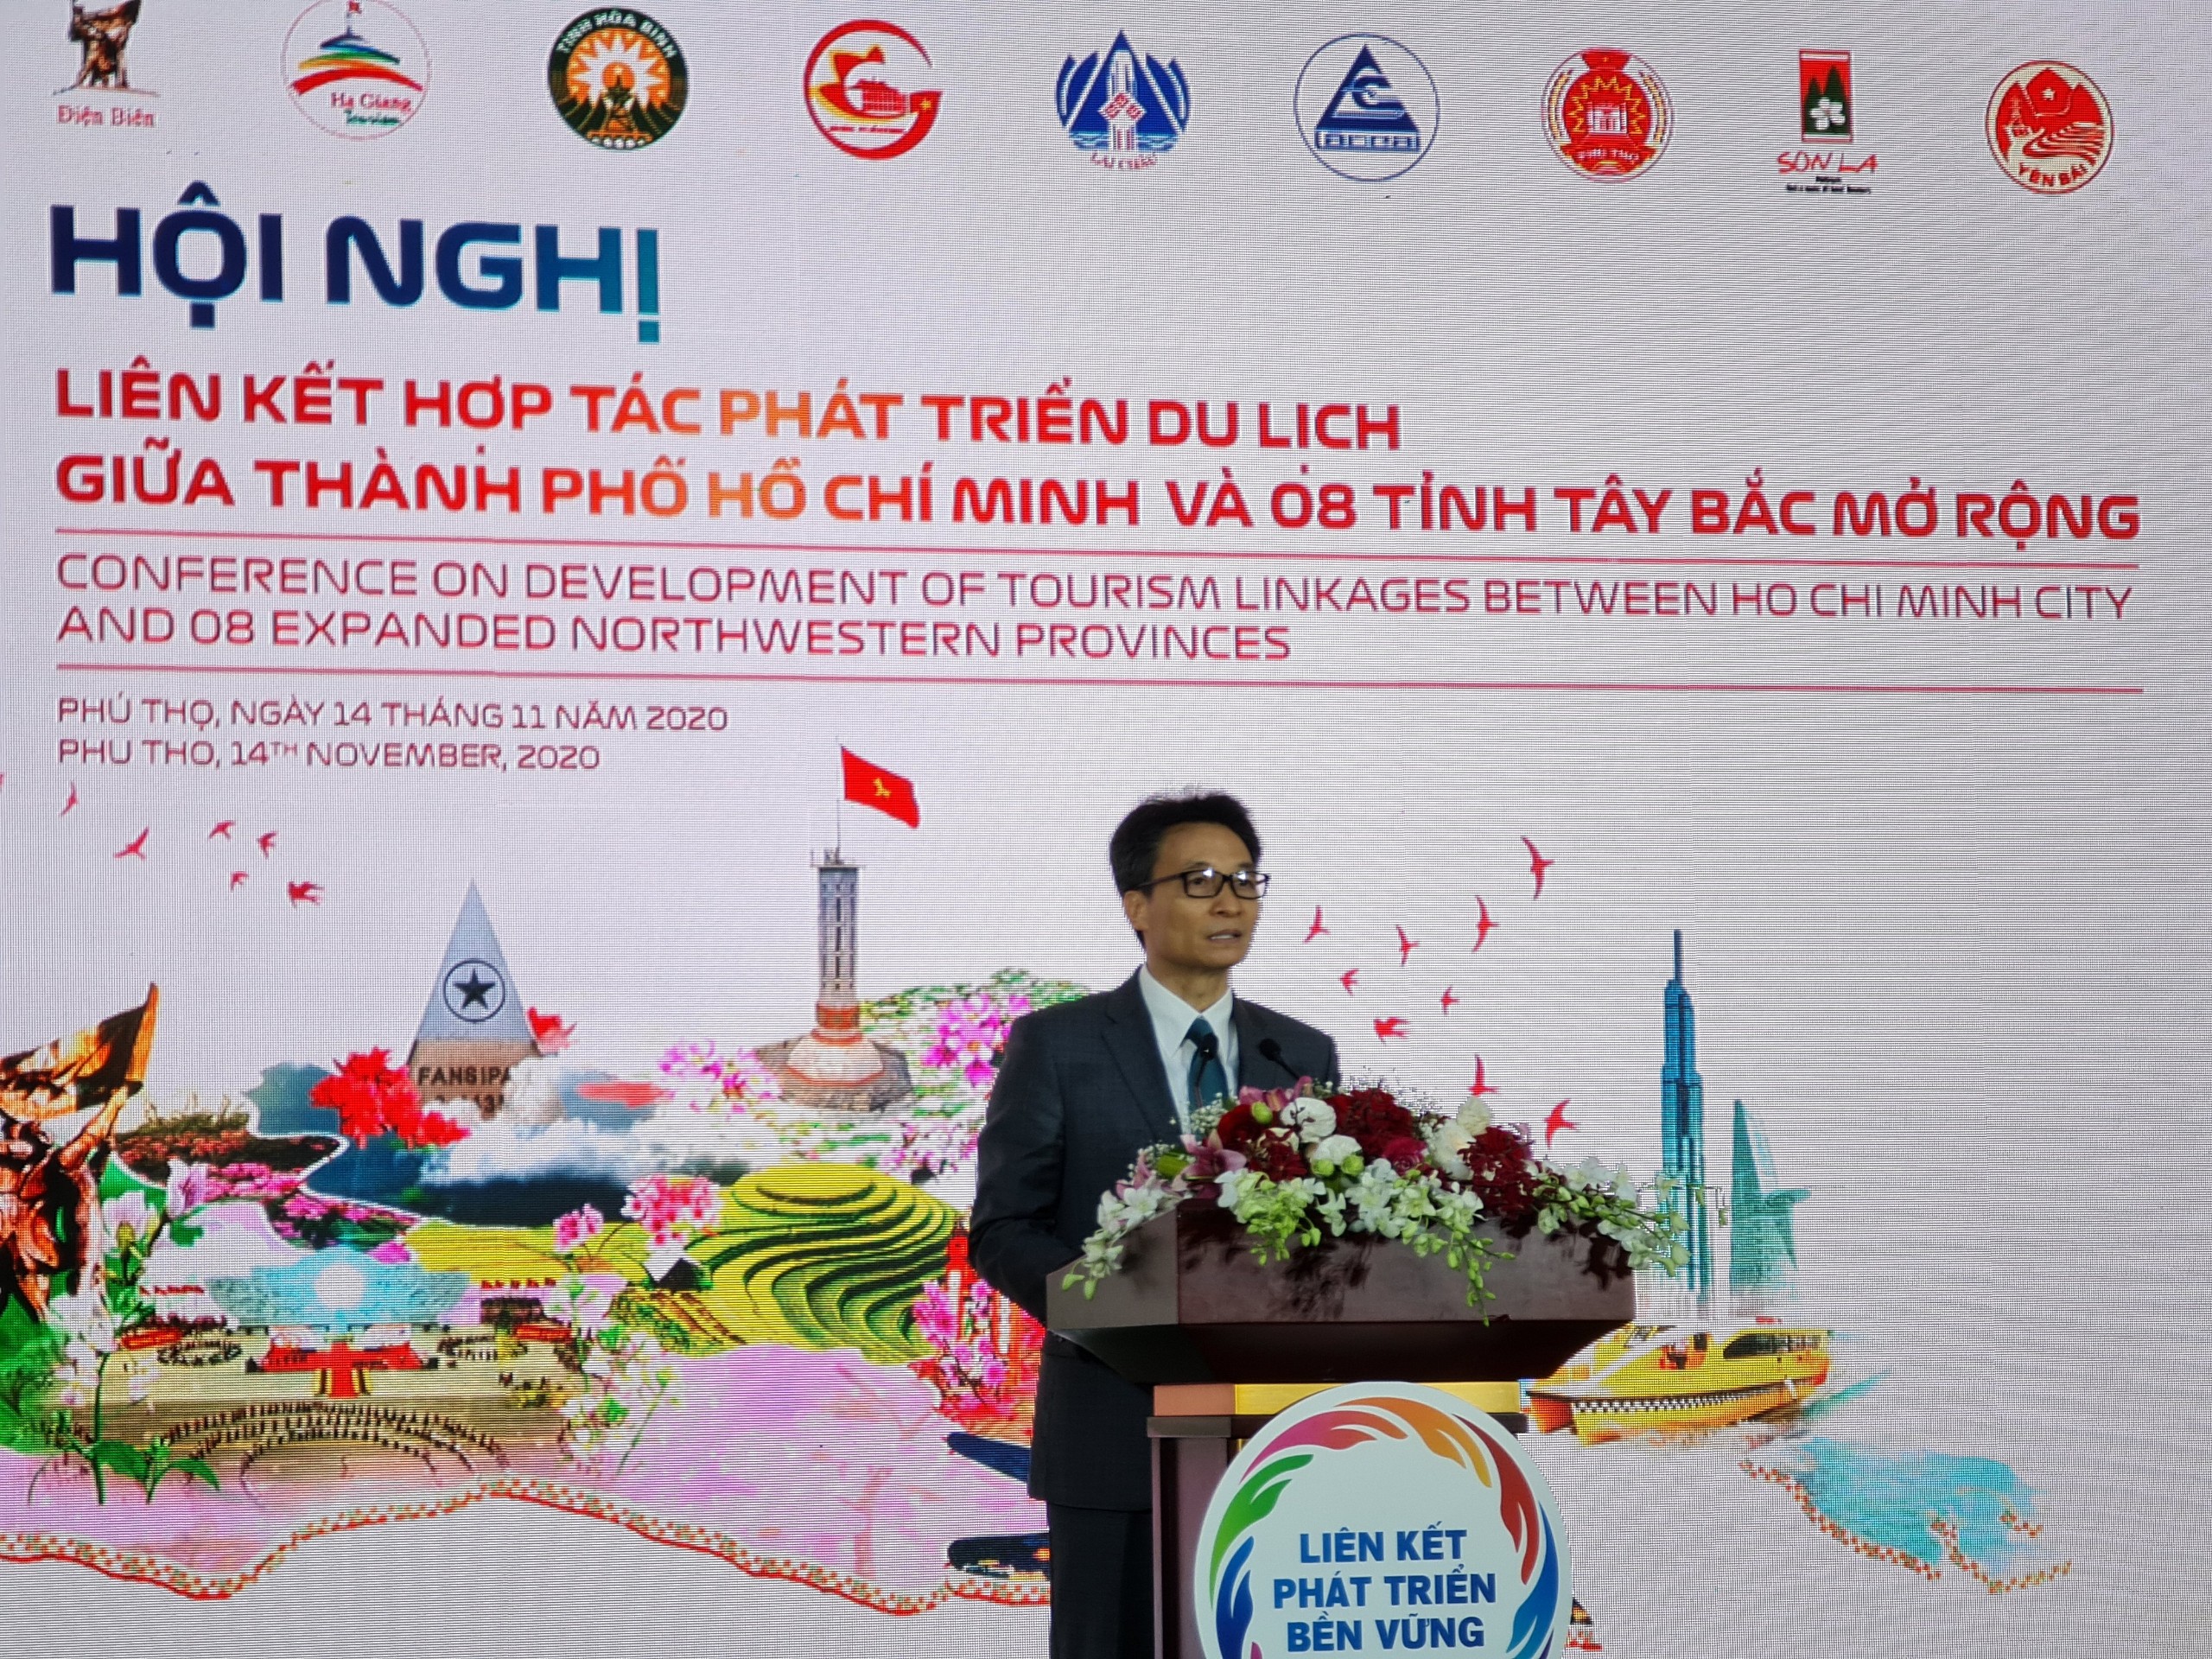 Hội nghị liên kết hợp tác phát triển du lịch giữa Thành phố Hồ Chí Minh và 08 tỉnh Tây Bắc mở rộng năm 2020